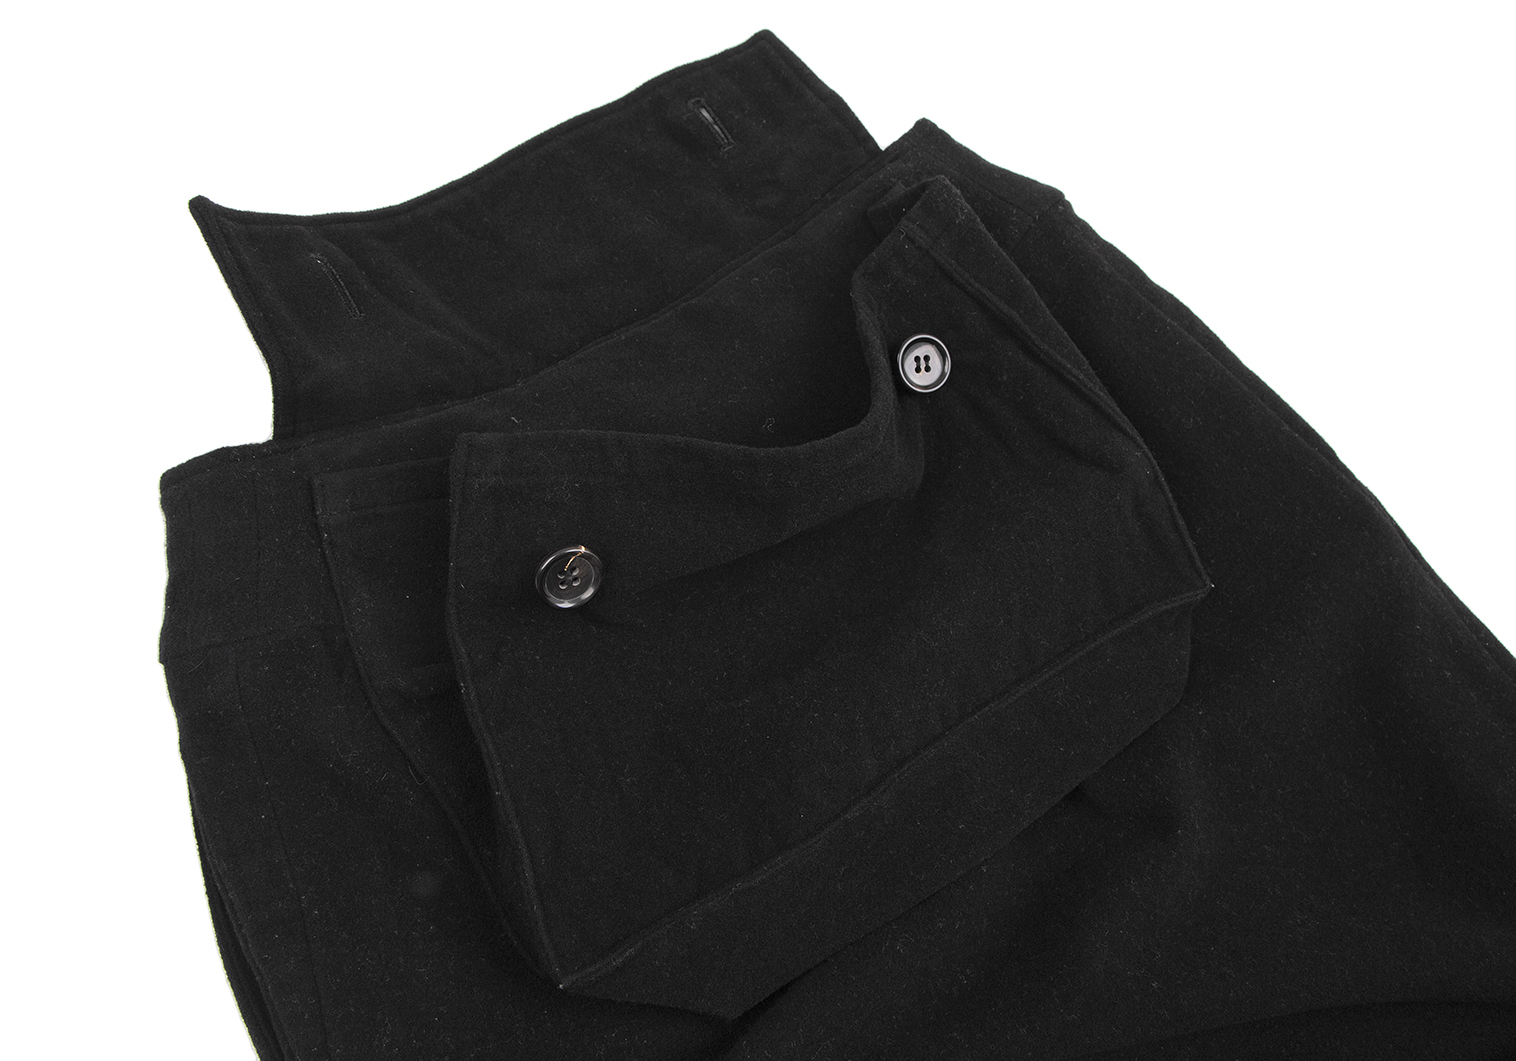 ワイズY's ウールバックポケットデザインスカート 黒M位